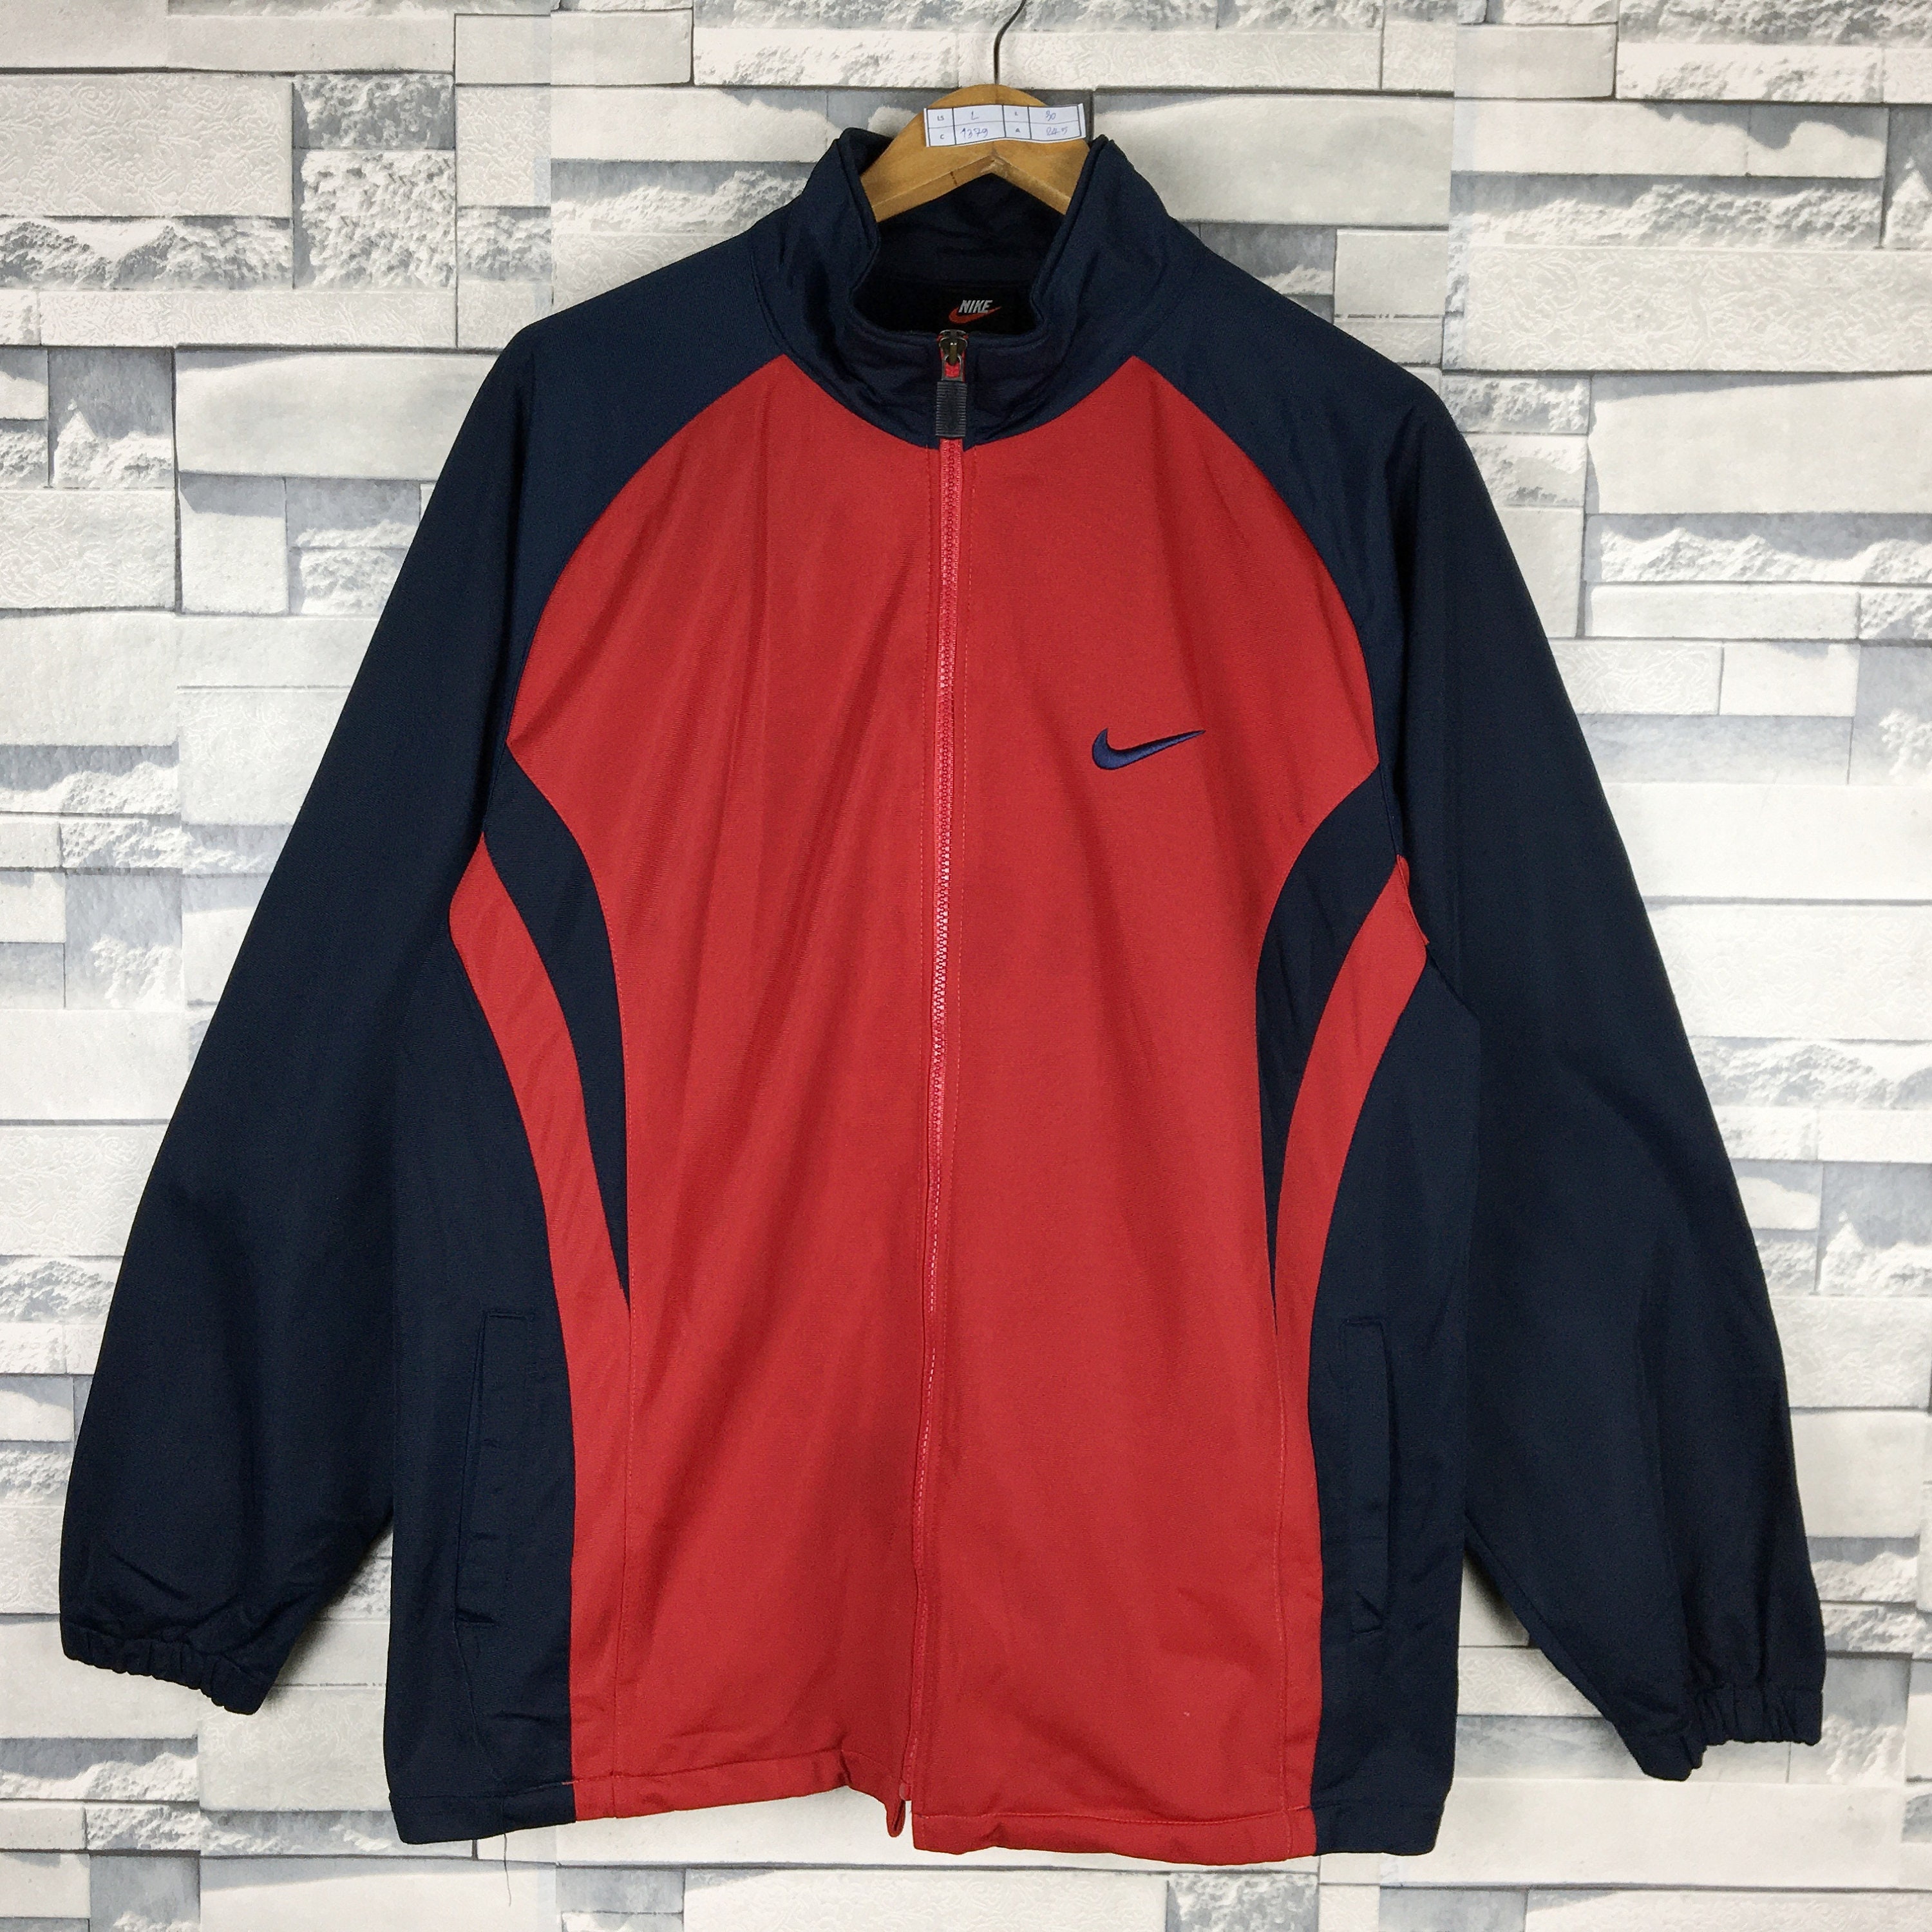 NIKE Track Jacket Large Vintage 90s Nike Swoosh Colorblock | Etsy